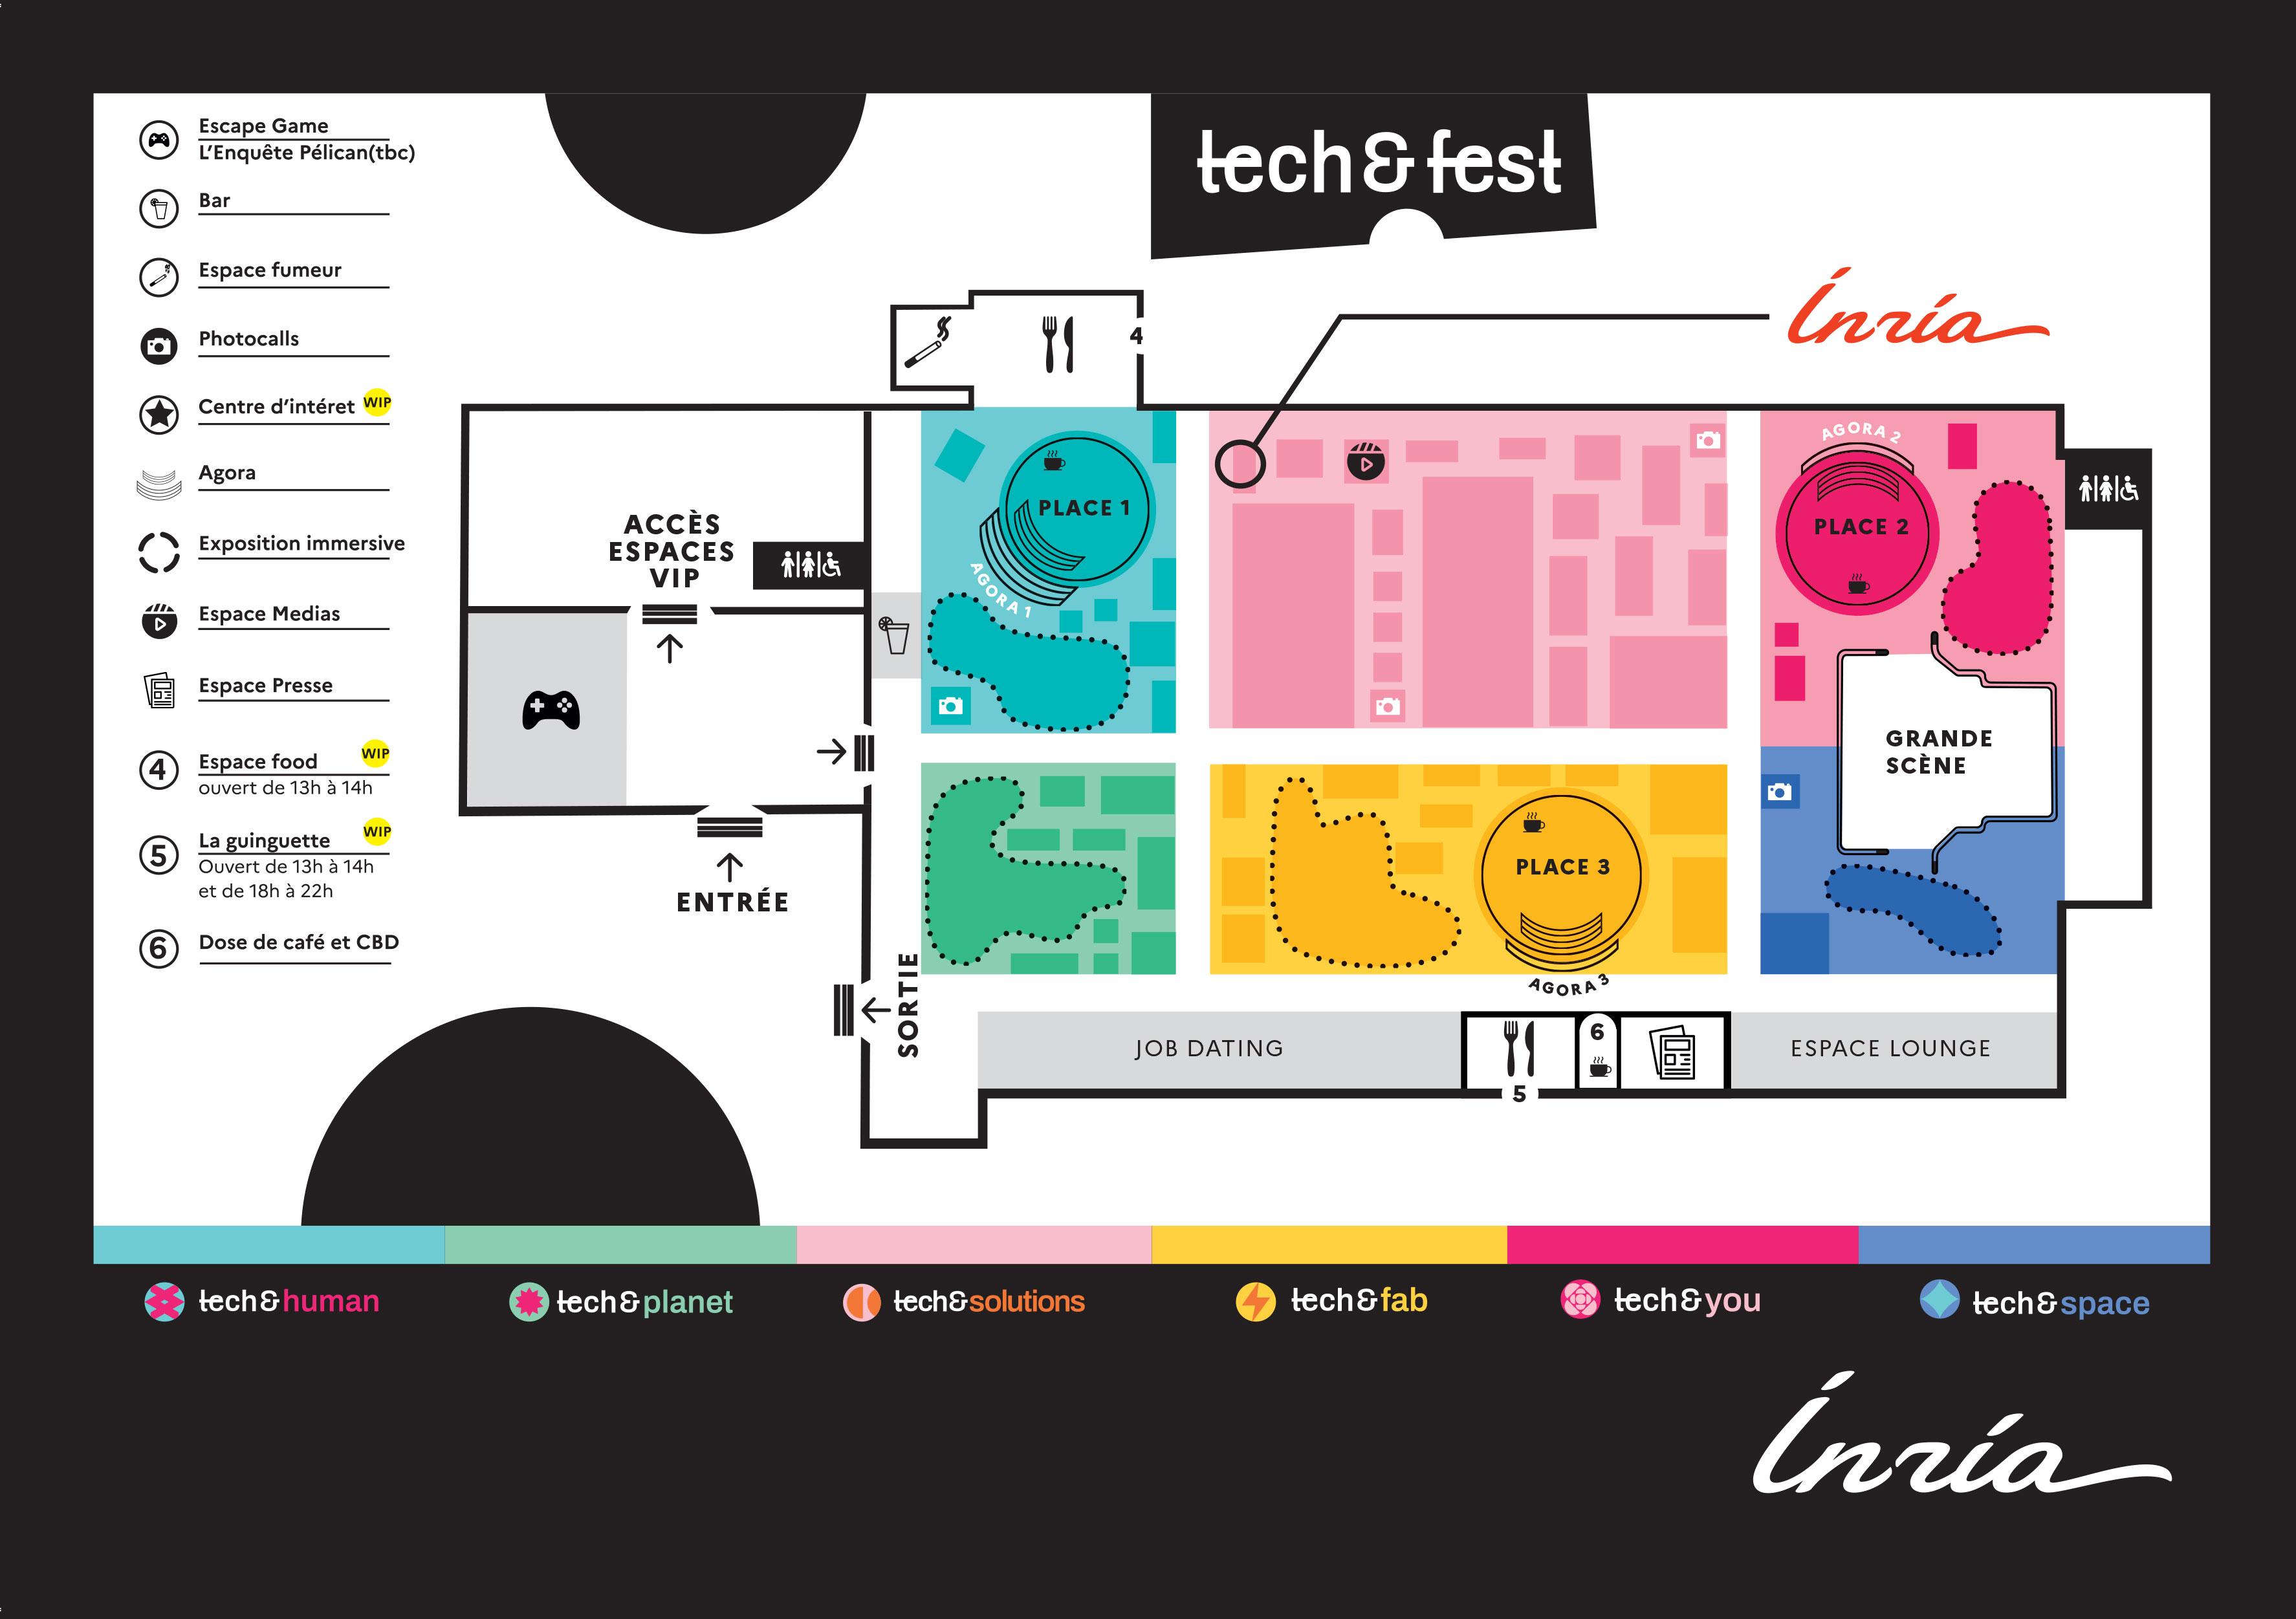 Plan du festival Tech&Fest